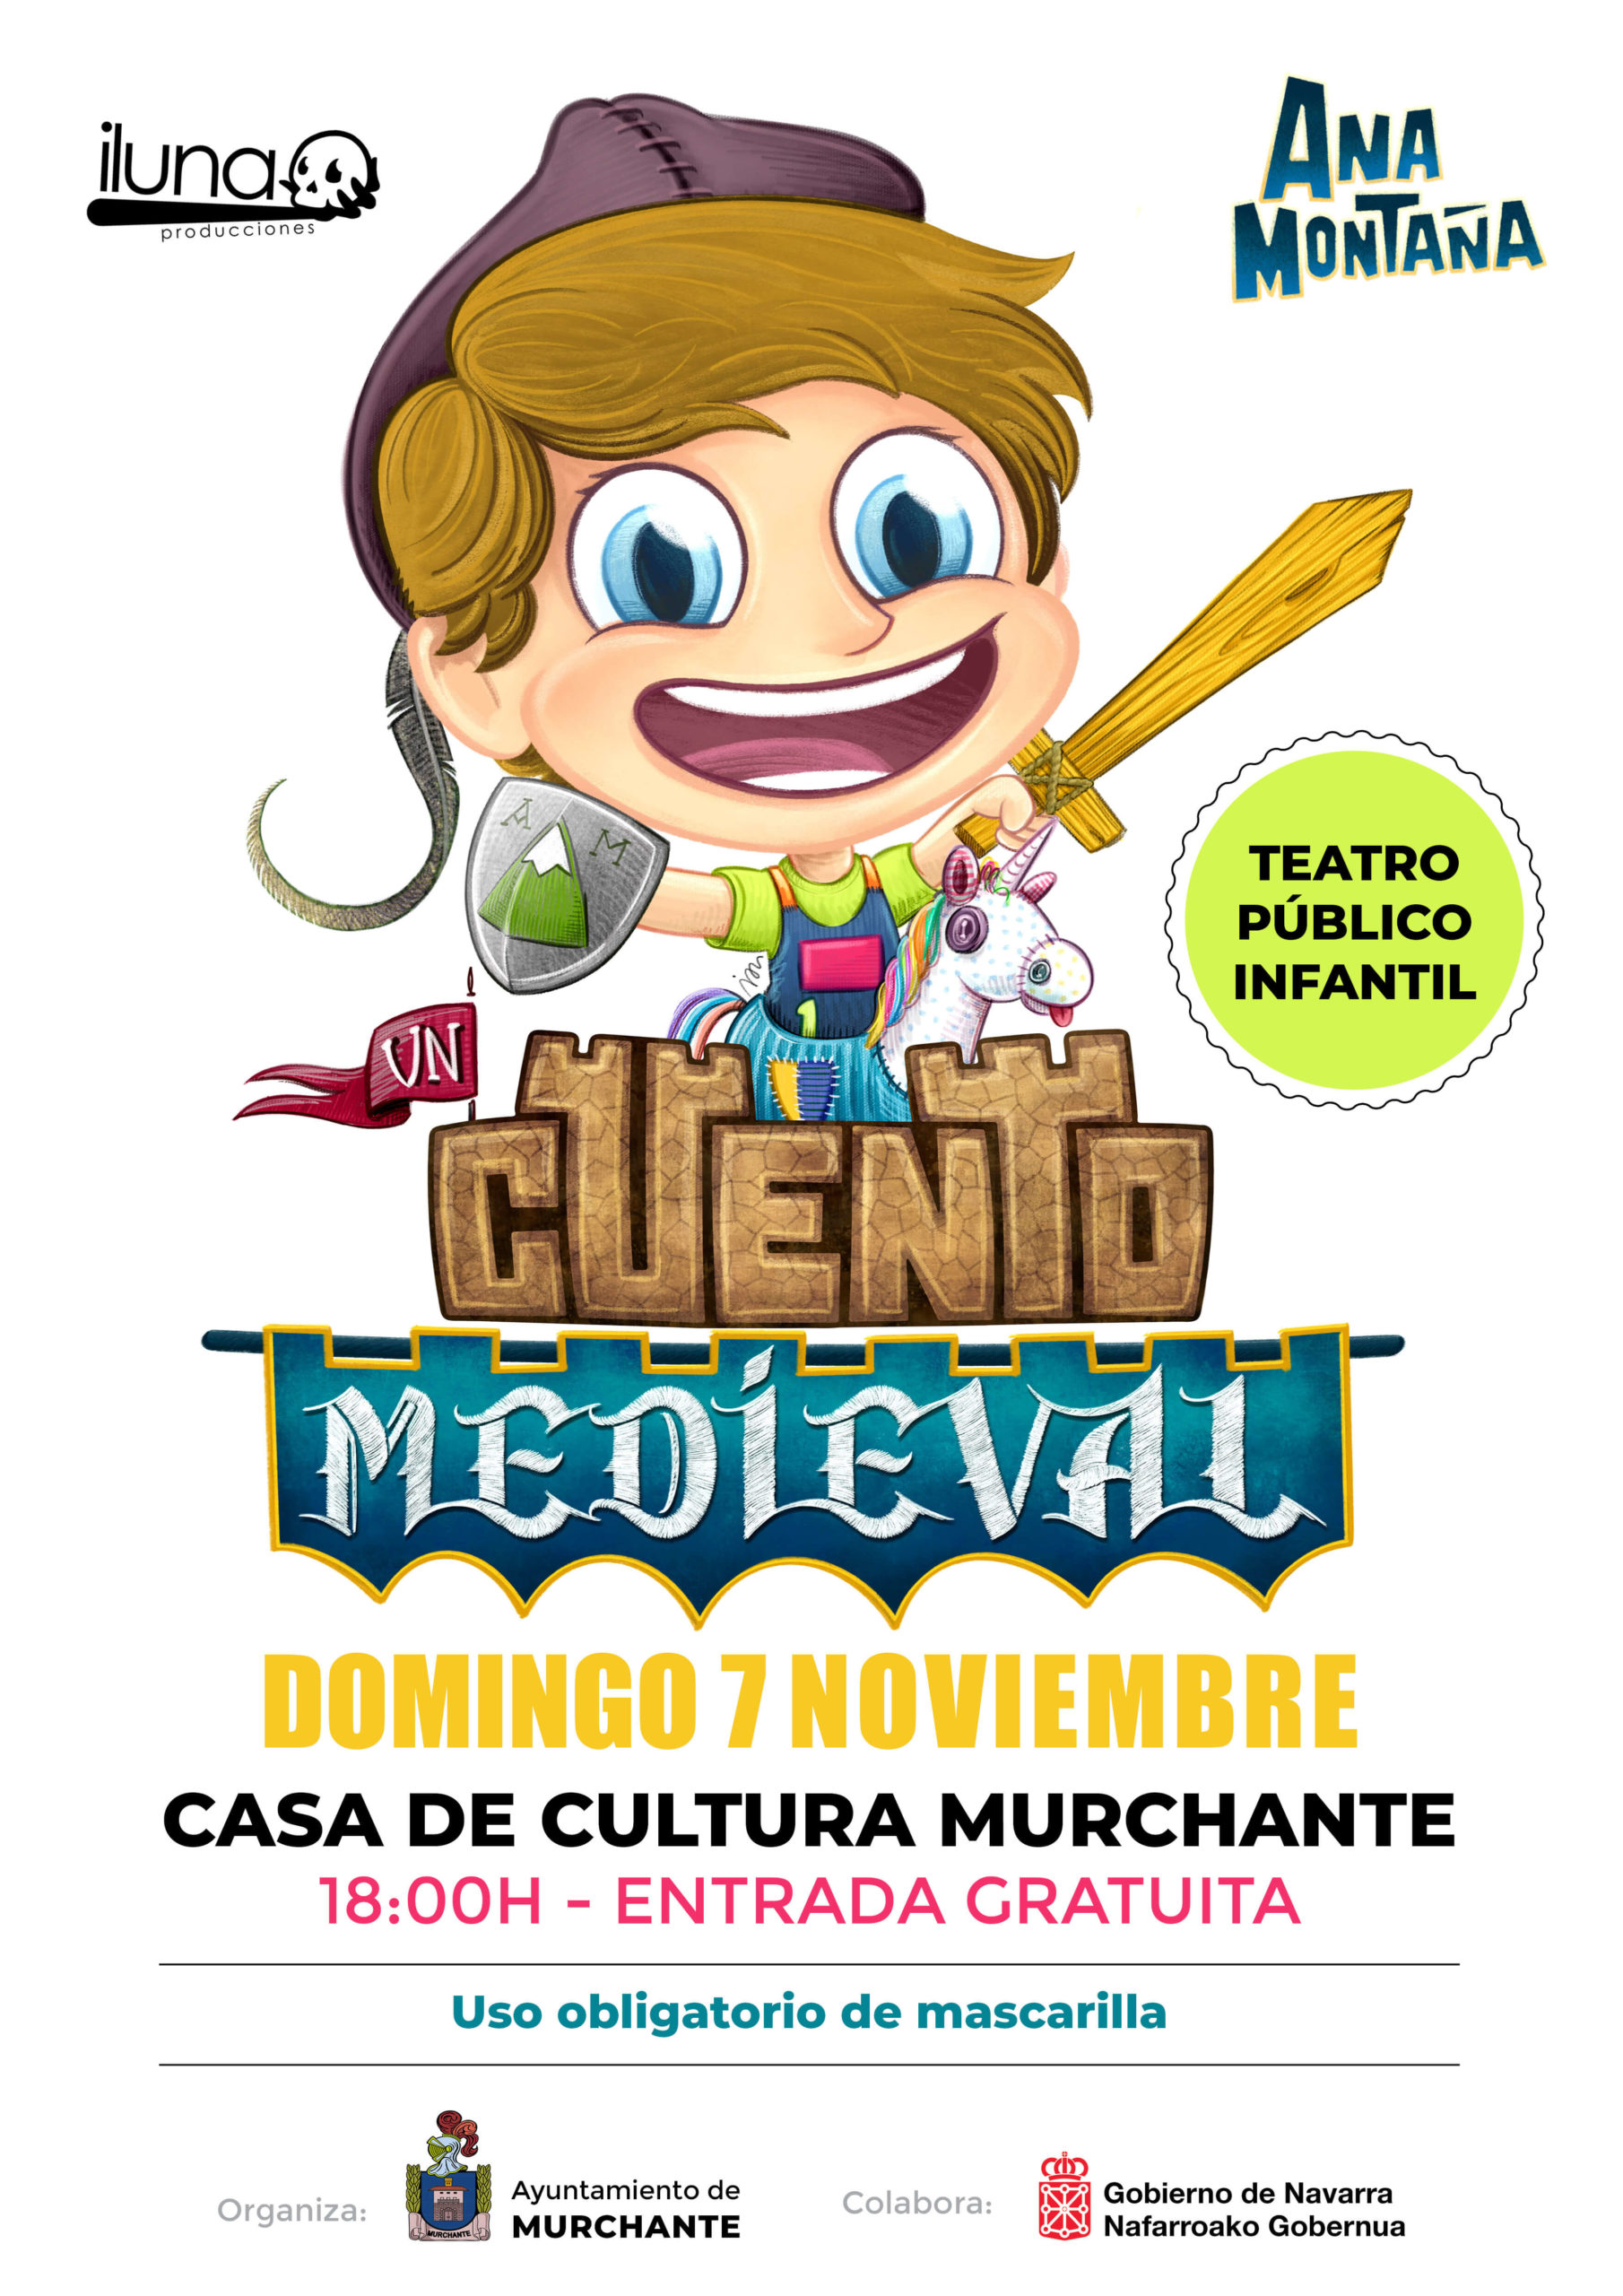 actividades culturales, teatro infantil, actividades con niños, planes en familia en navarra, norte de españa